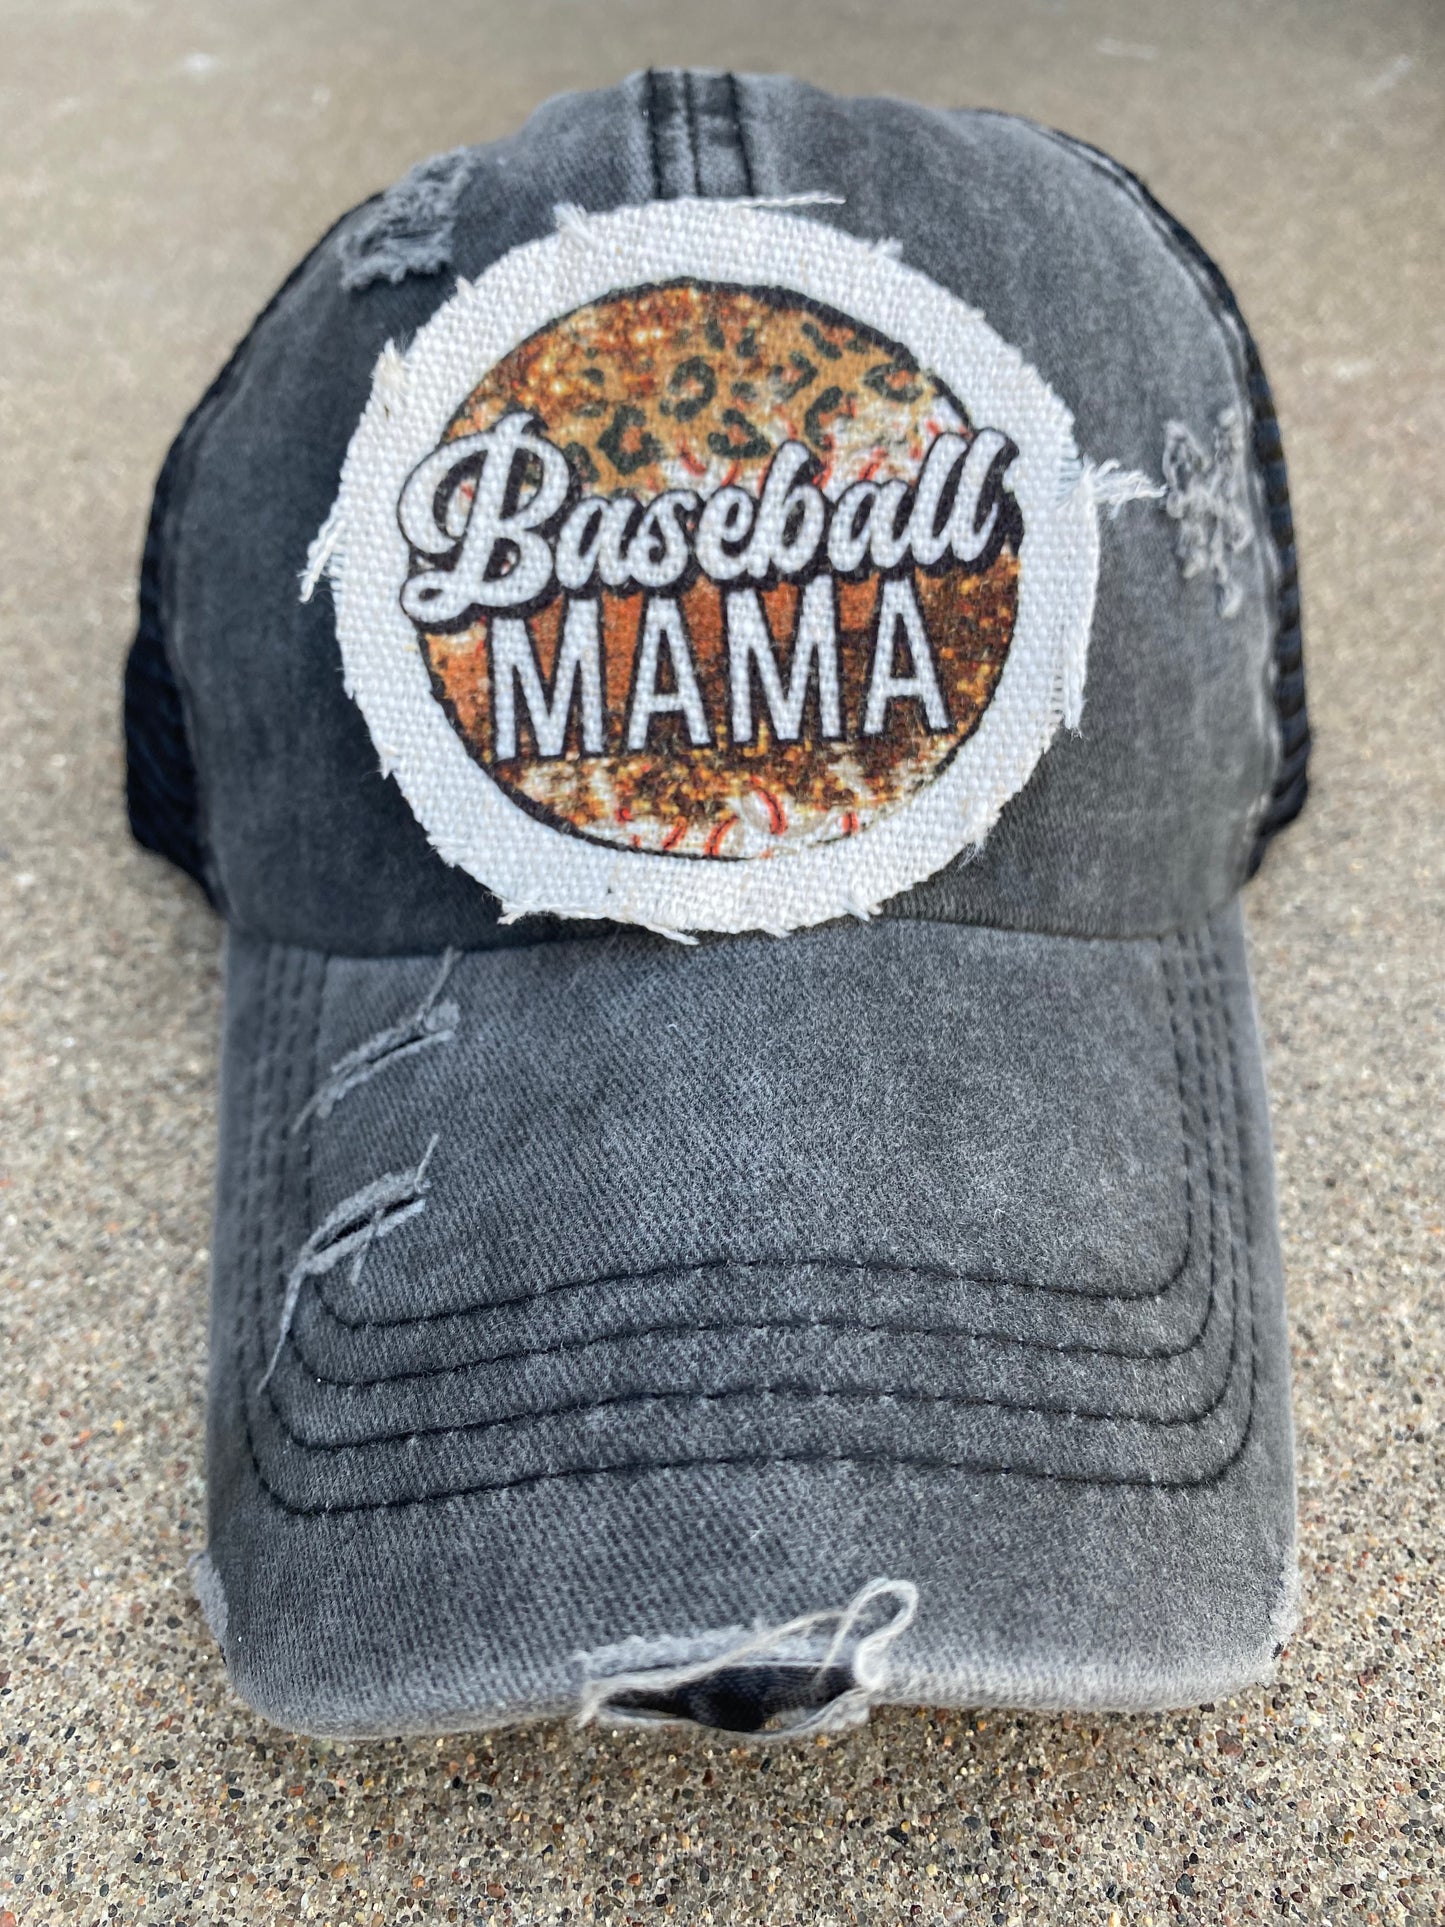 Baseball Mama Circle Hat Patch